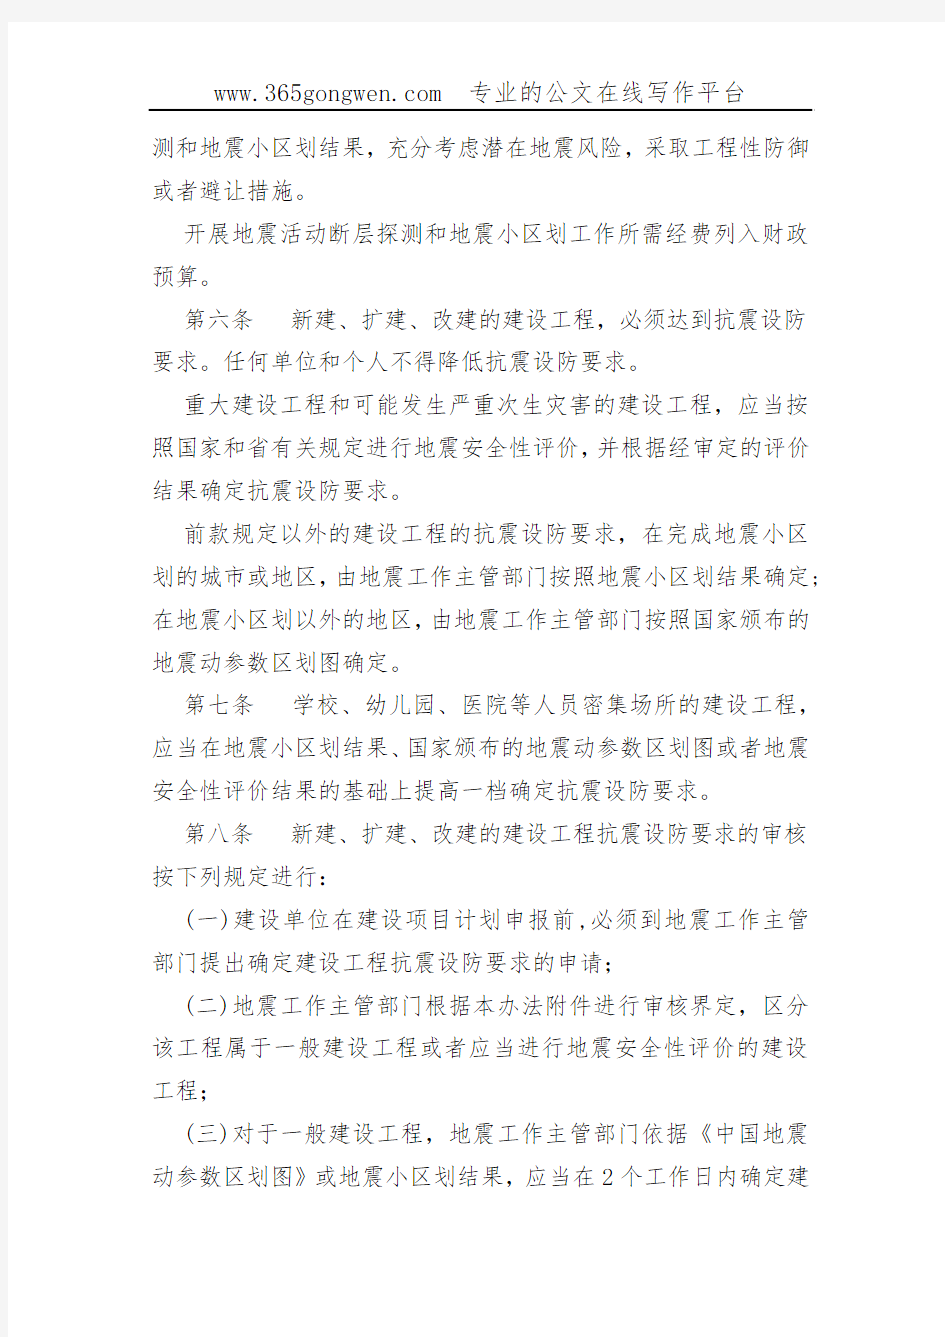 【地震办法】济宁市建设工程抗震设防要求管理办法